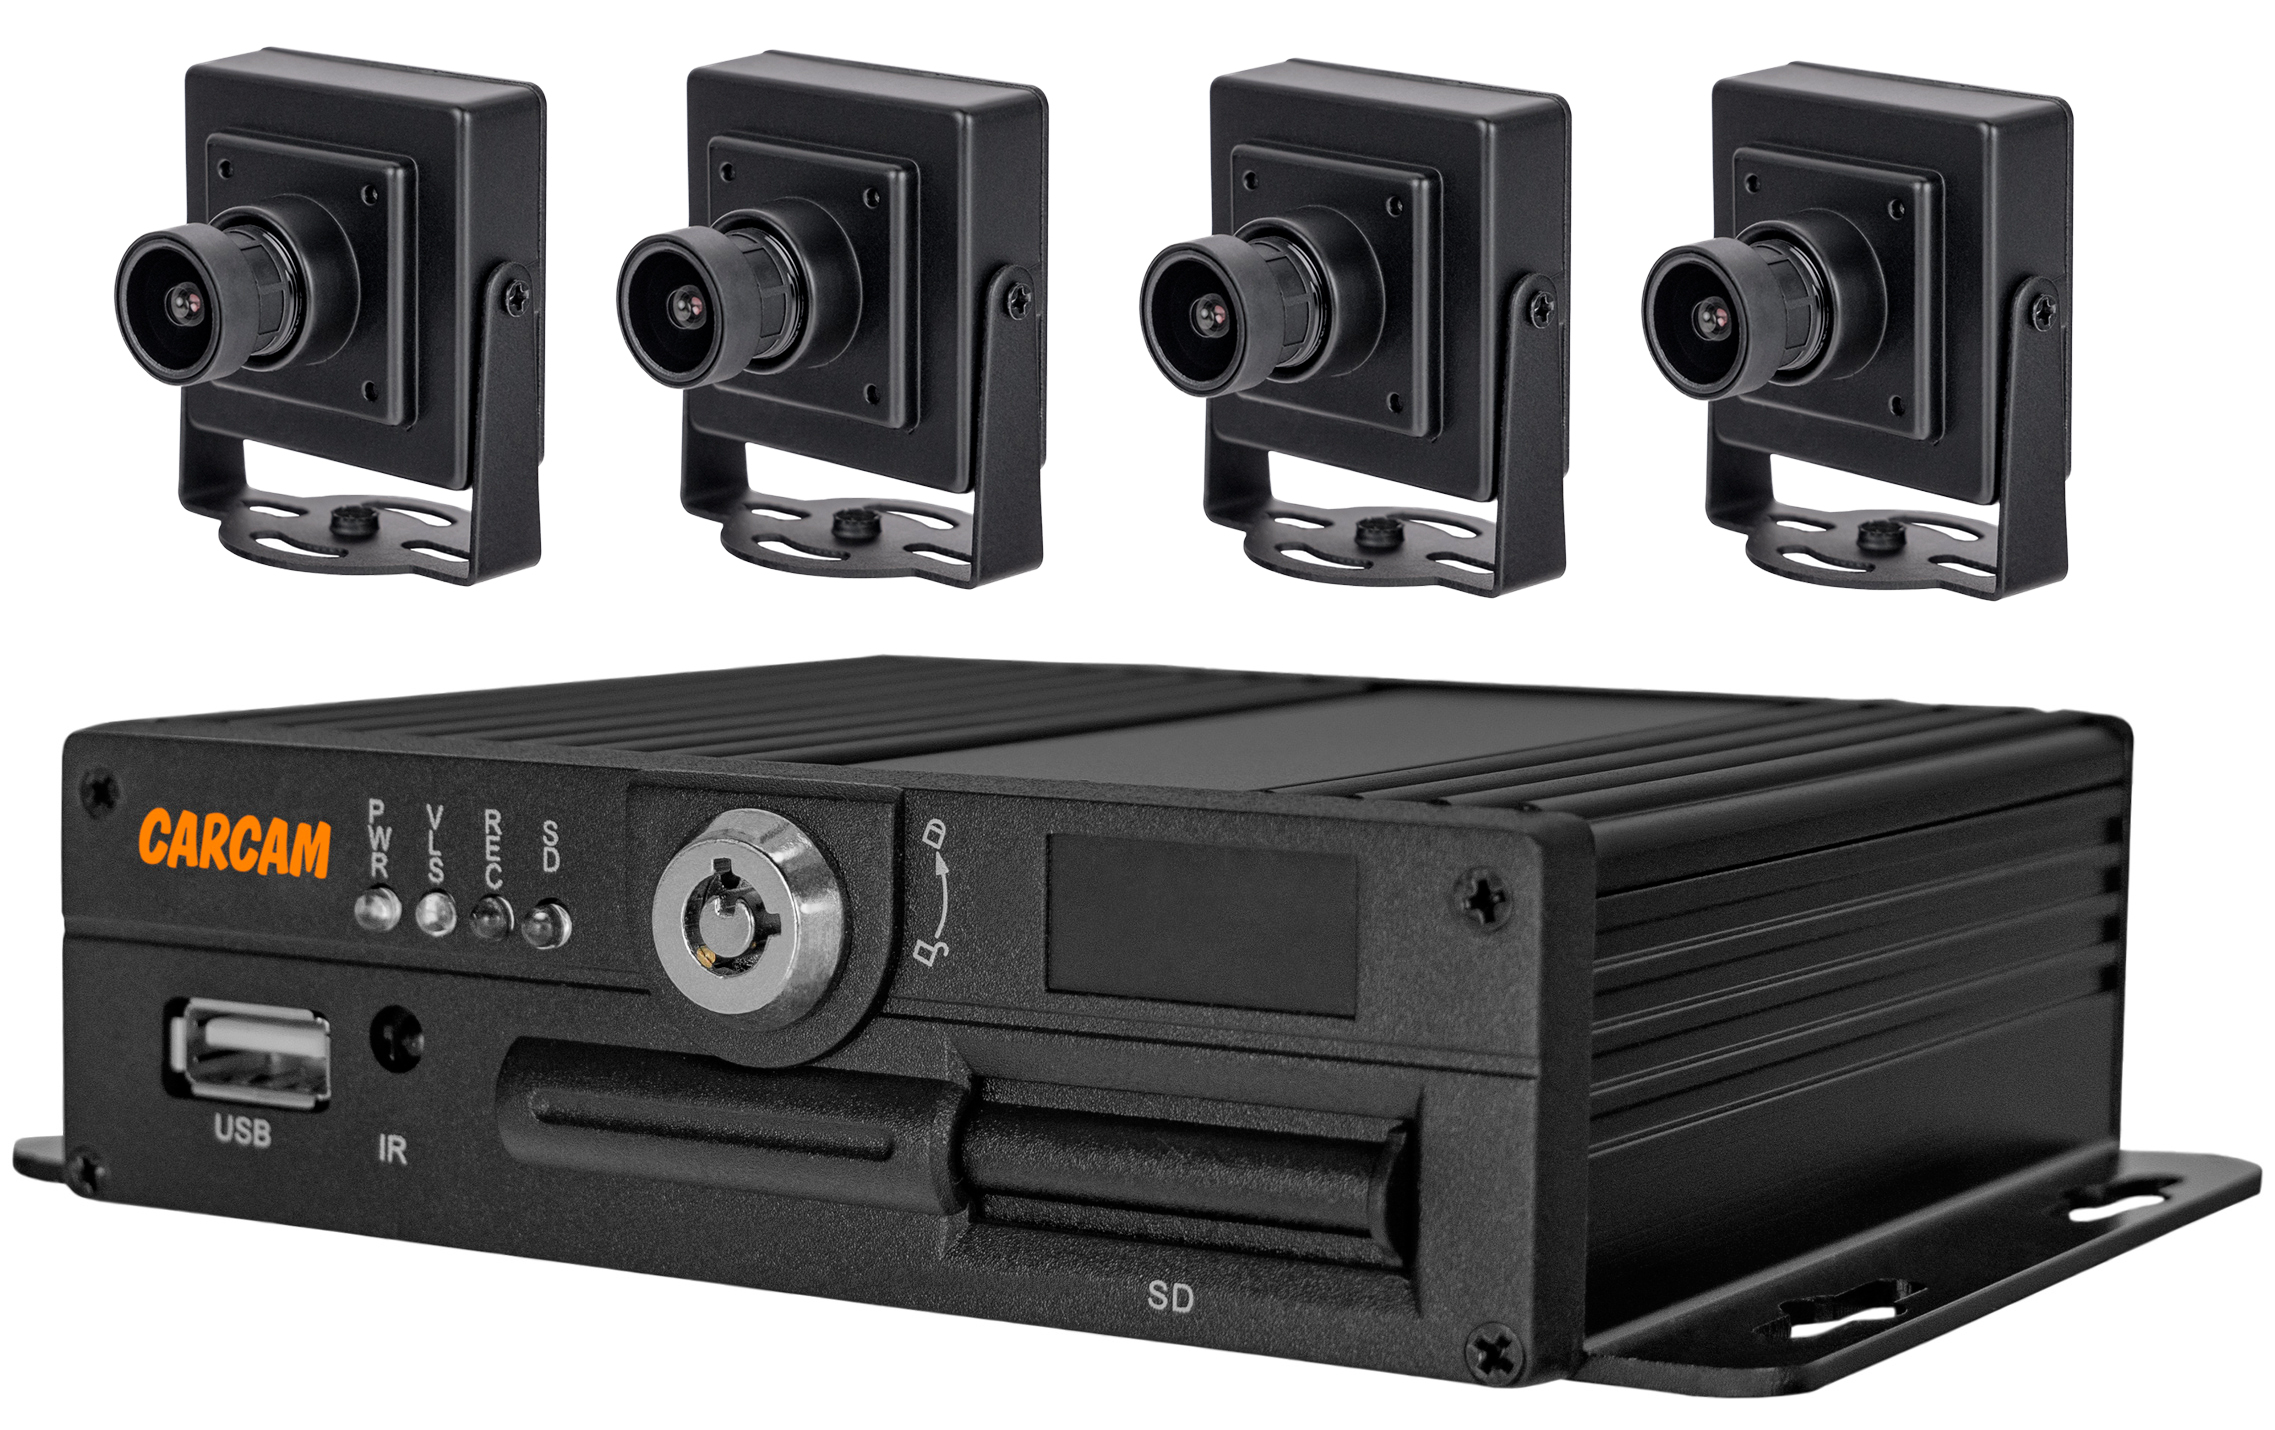 Комплект мониторинга транспорта CARCAM MVR KIT 4411/166X4 комплект видеонаблюдения carcam 4ch xvr kit 3004 2075x4